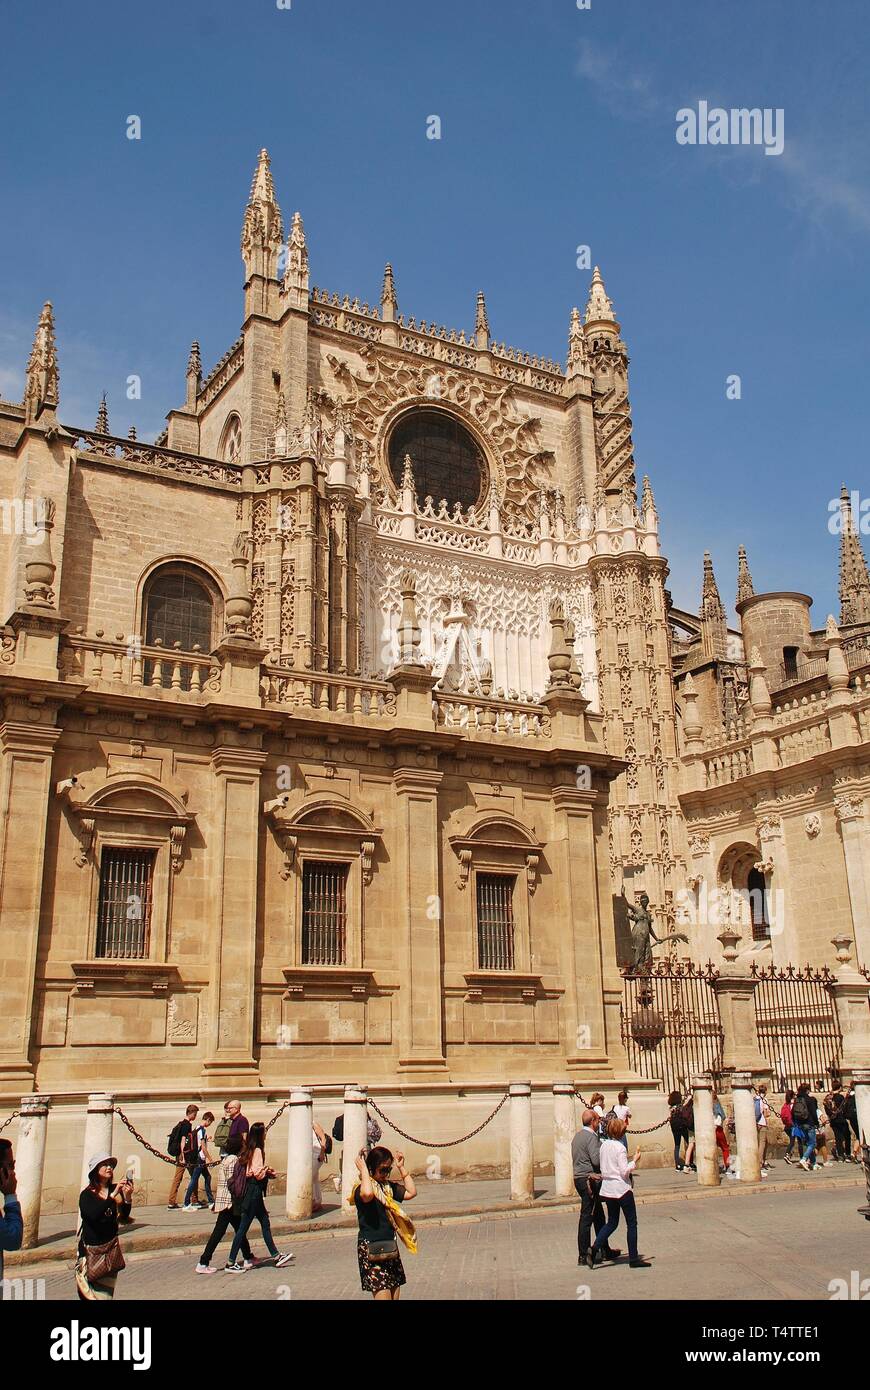 Die Kathedrale Santa Maria de la Sede in Sevilla, Spanien am 2. April 2019. Im Jahre 1402 begonnen, es ist die größte gotische Kathedrale in der Welt. Stockfoto